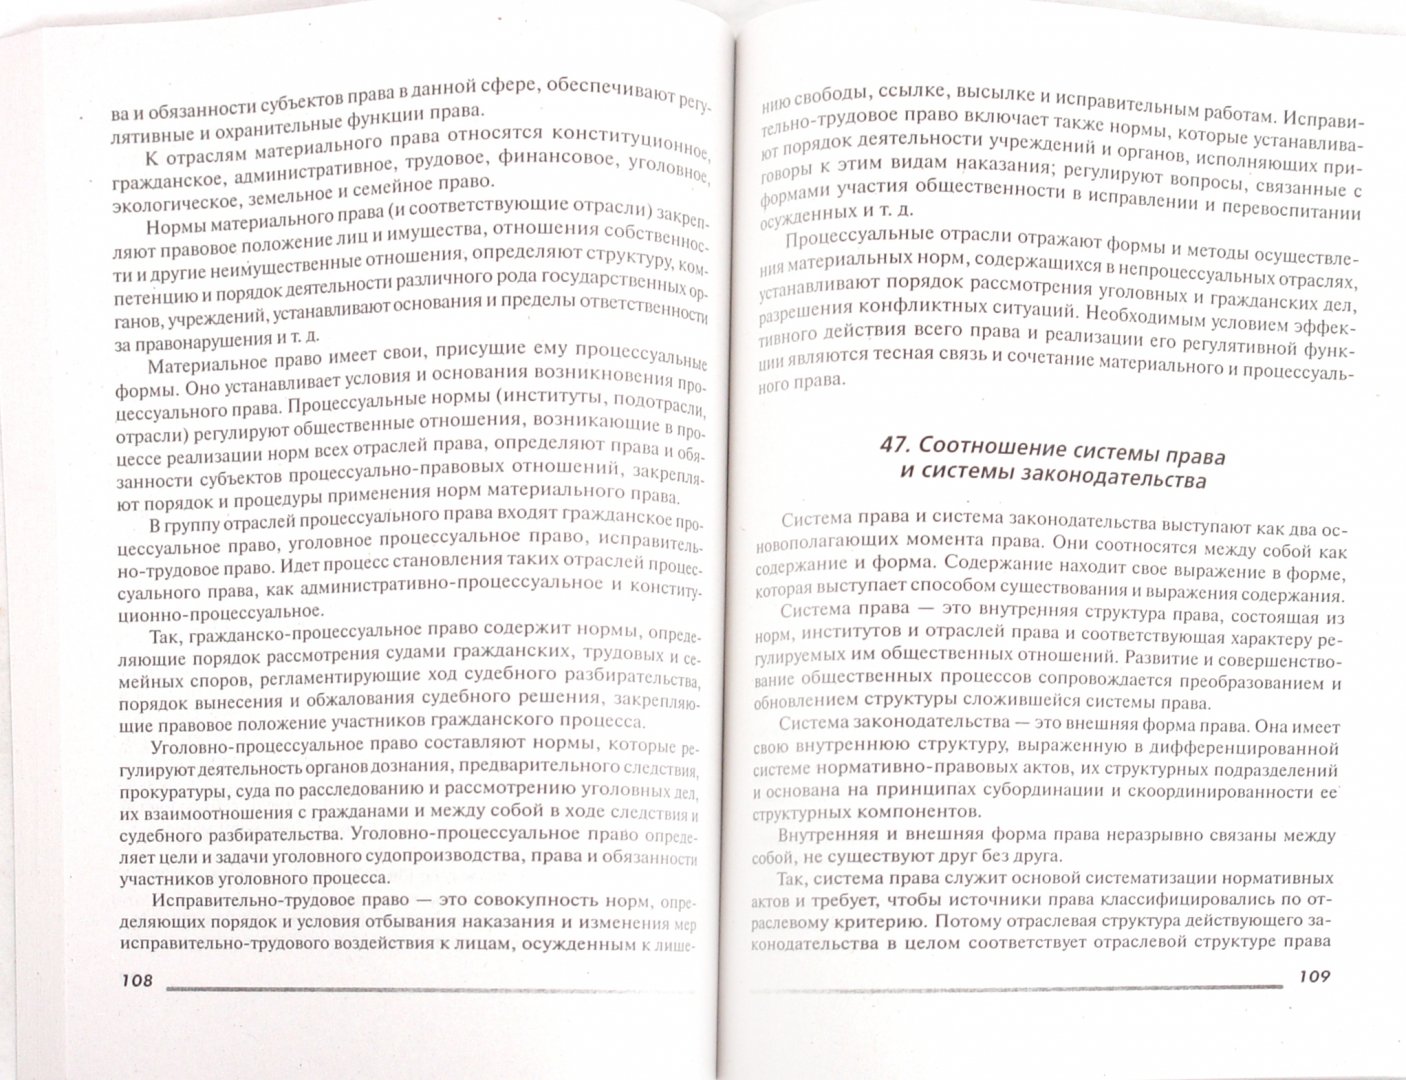 Иллюстрация 1 из 4 для Теория государства и права: 100 экзаменационных ответов - Лариса Колюшкина | Лабиринт - книги. Источник: Лабиринт